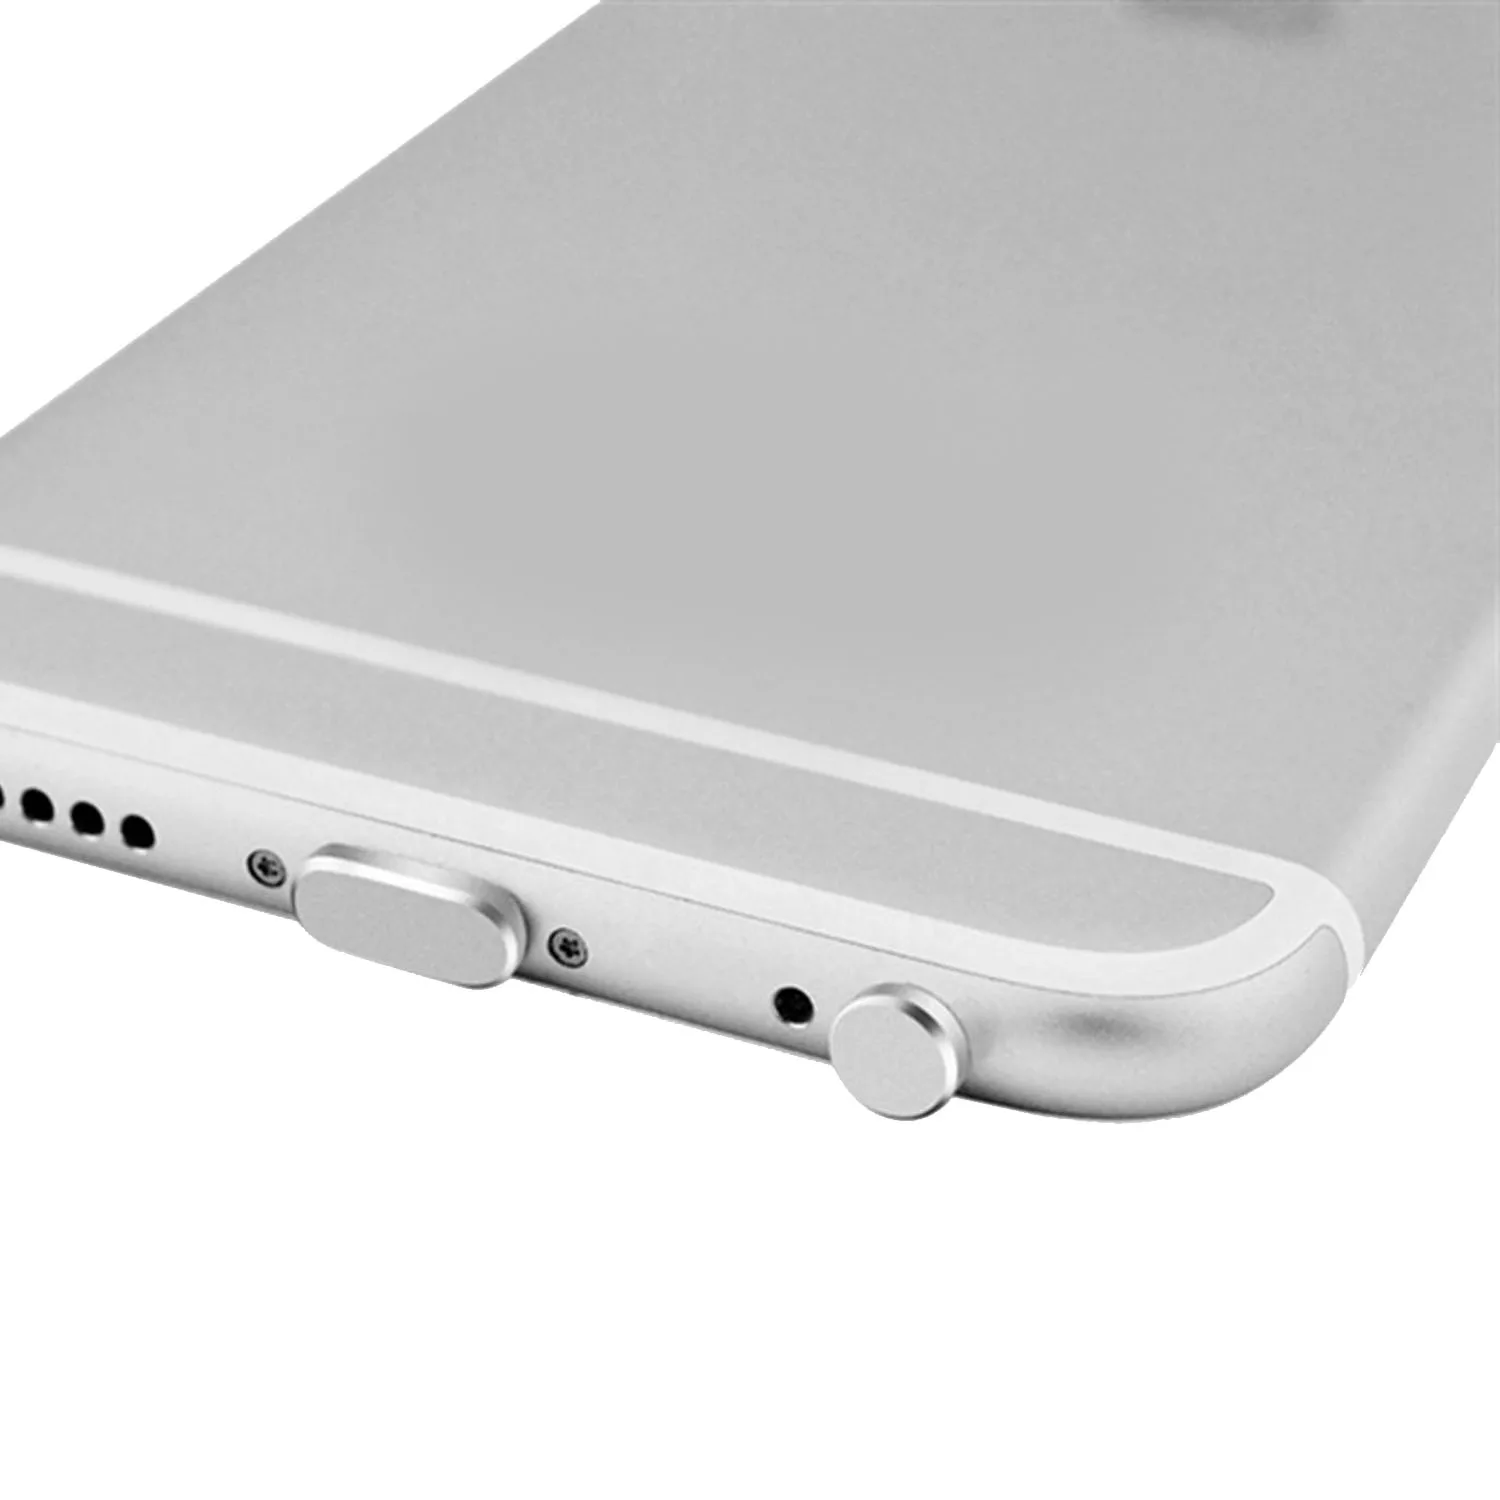 Besegad металлический 3,5 мм разъем для наушников Пылезащитная заглушка против пыли ушной колпачок зарядный порт для iPhone 6 6s Plus 5s SE iPad гаджеты для телефона